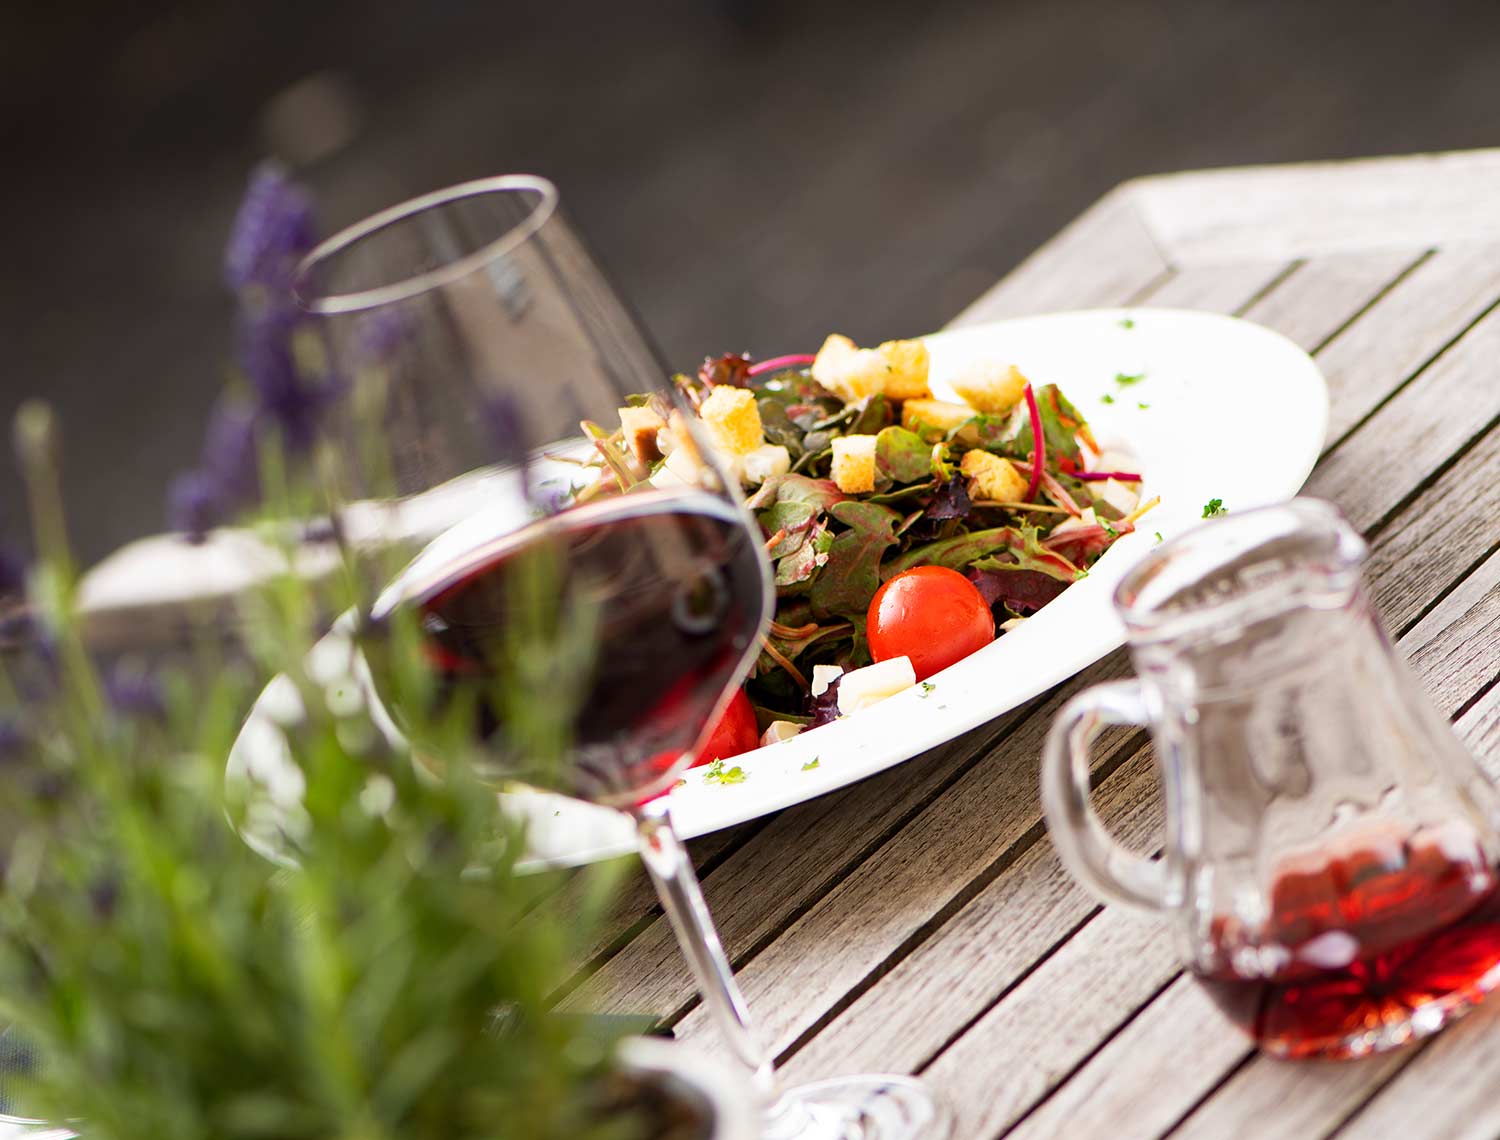 Blick auf einen Bunt gefüllten Teller. Es sind Salate, Croutons und Tomaten zu erkennen. Im Vordergrund sieht man ein Glas Rotwein sowie eine Karaffe mit Rotweinresten.